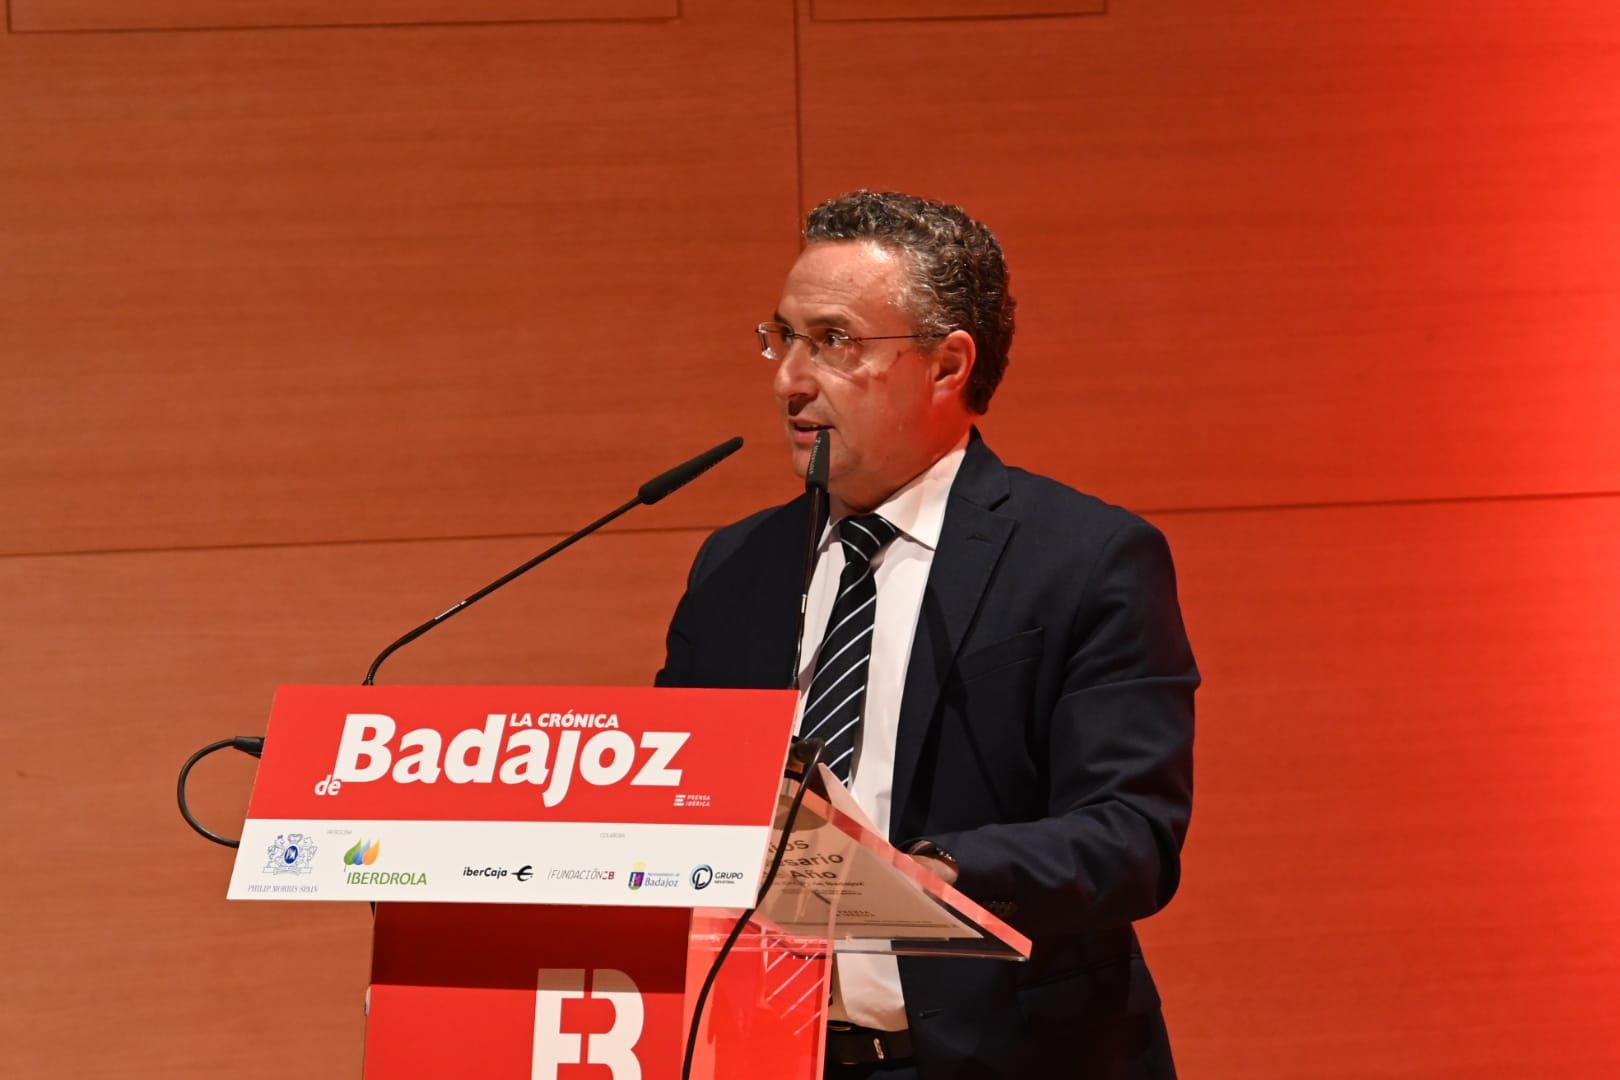 Las imágenes de la gala XII Premios Empresario de Badajoz